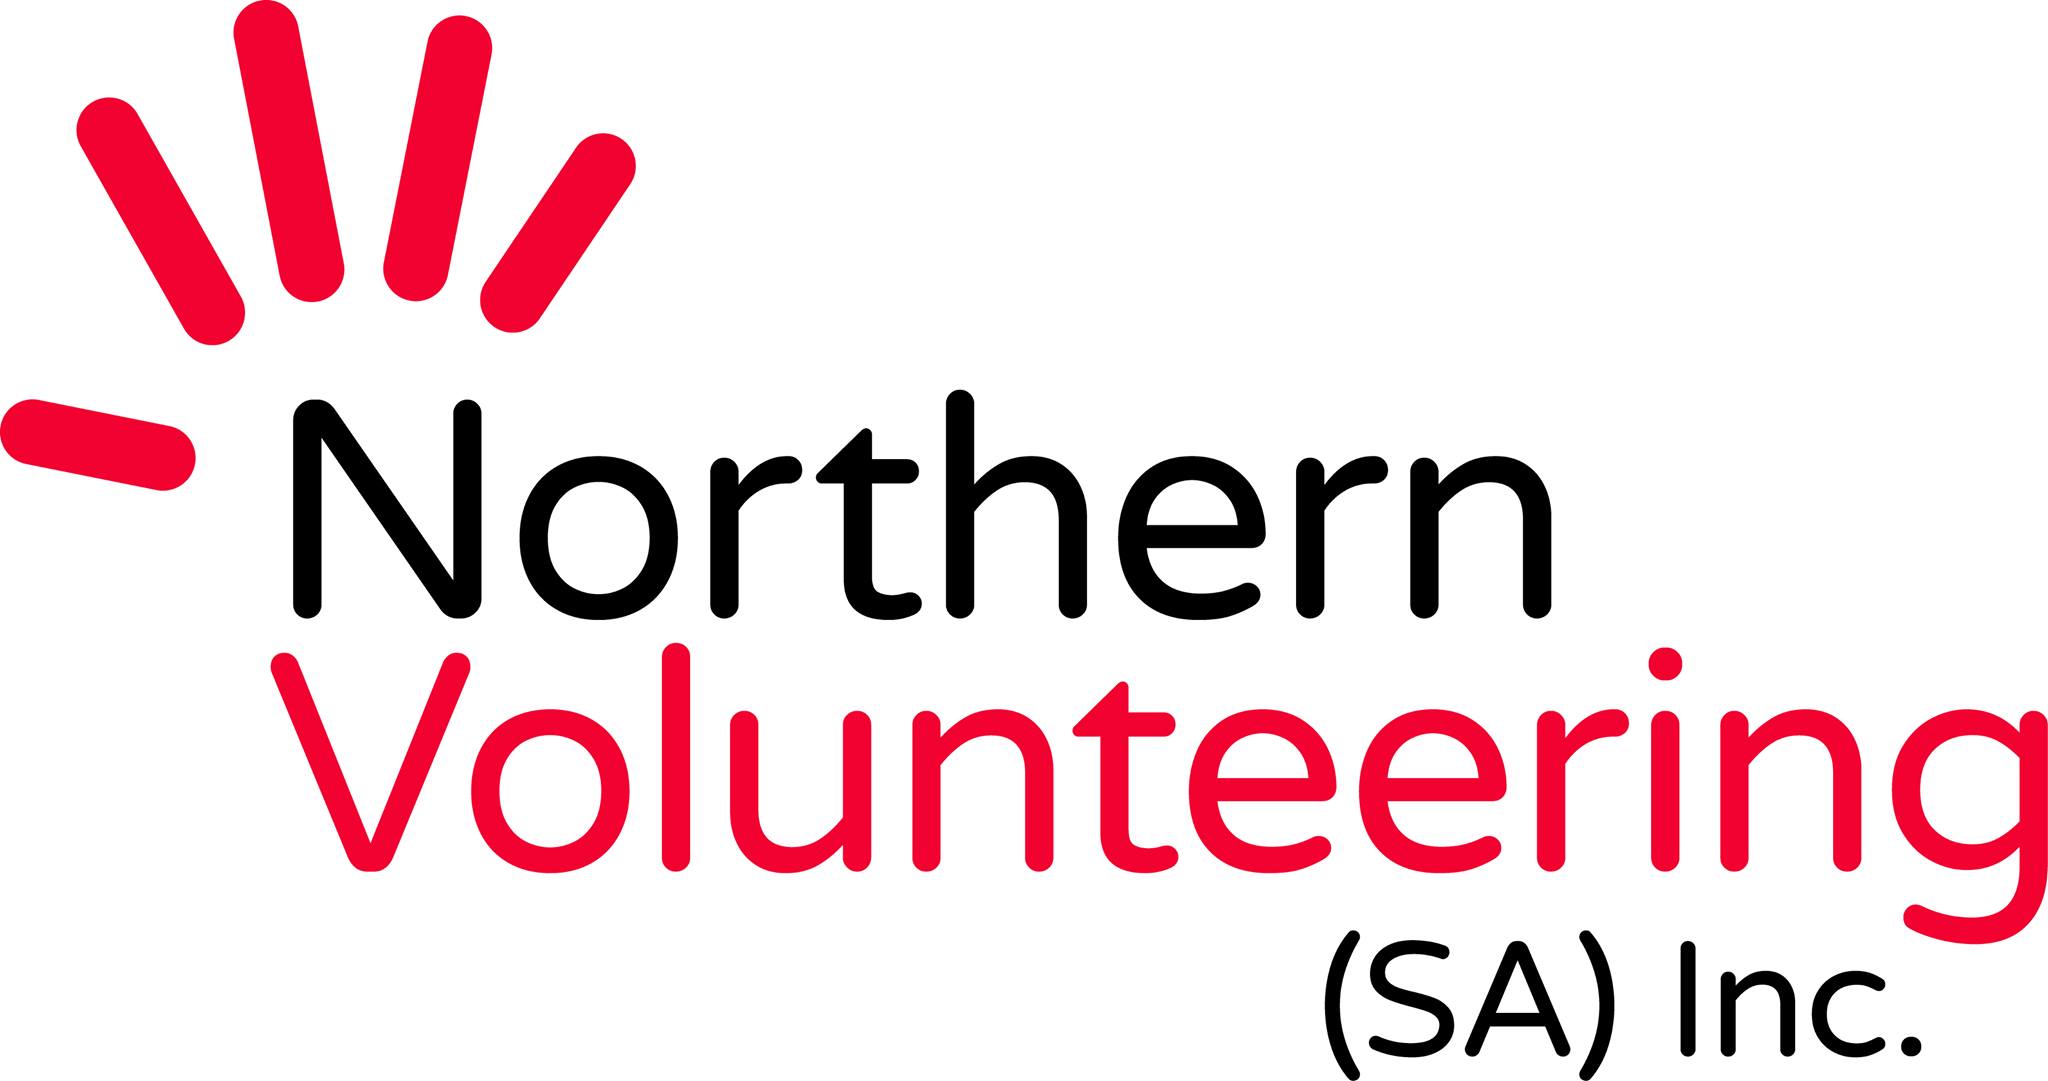 Voluntariado Norte SA Inc